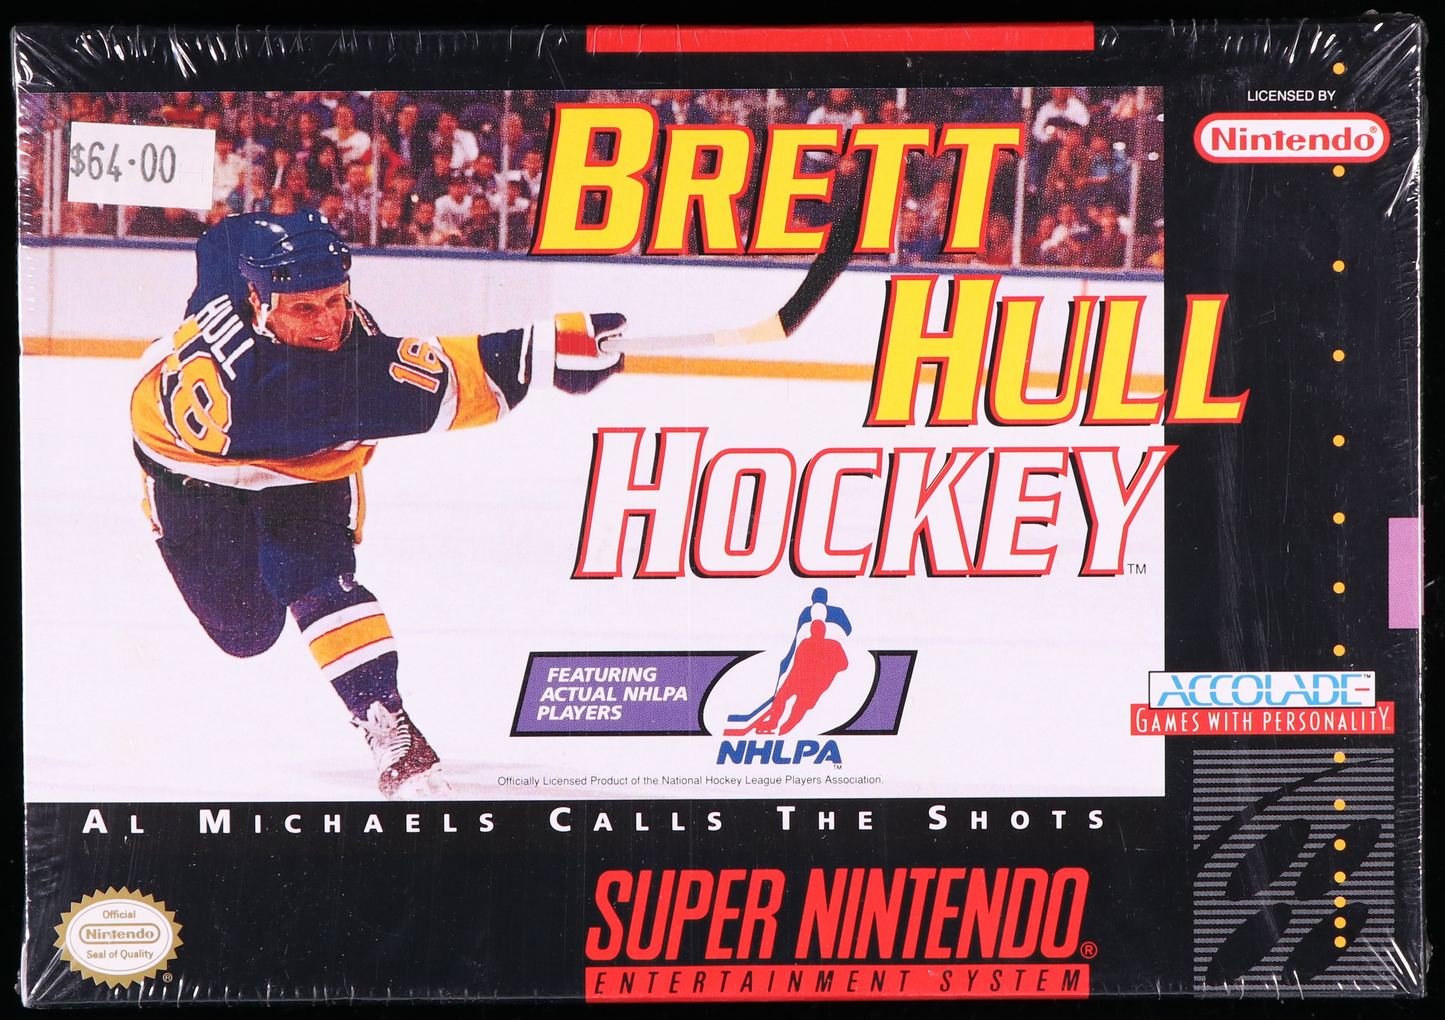 Brett Hull Hockey SNES 9.4 A+ - NEBRASKA COLLECTION